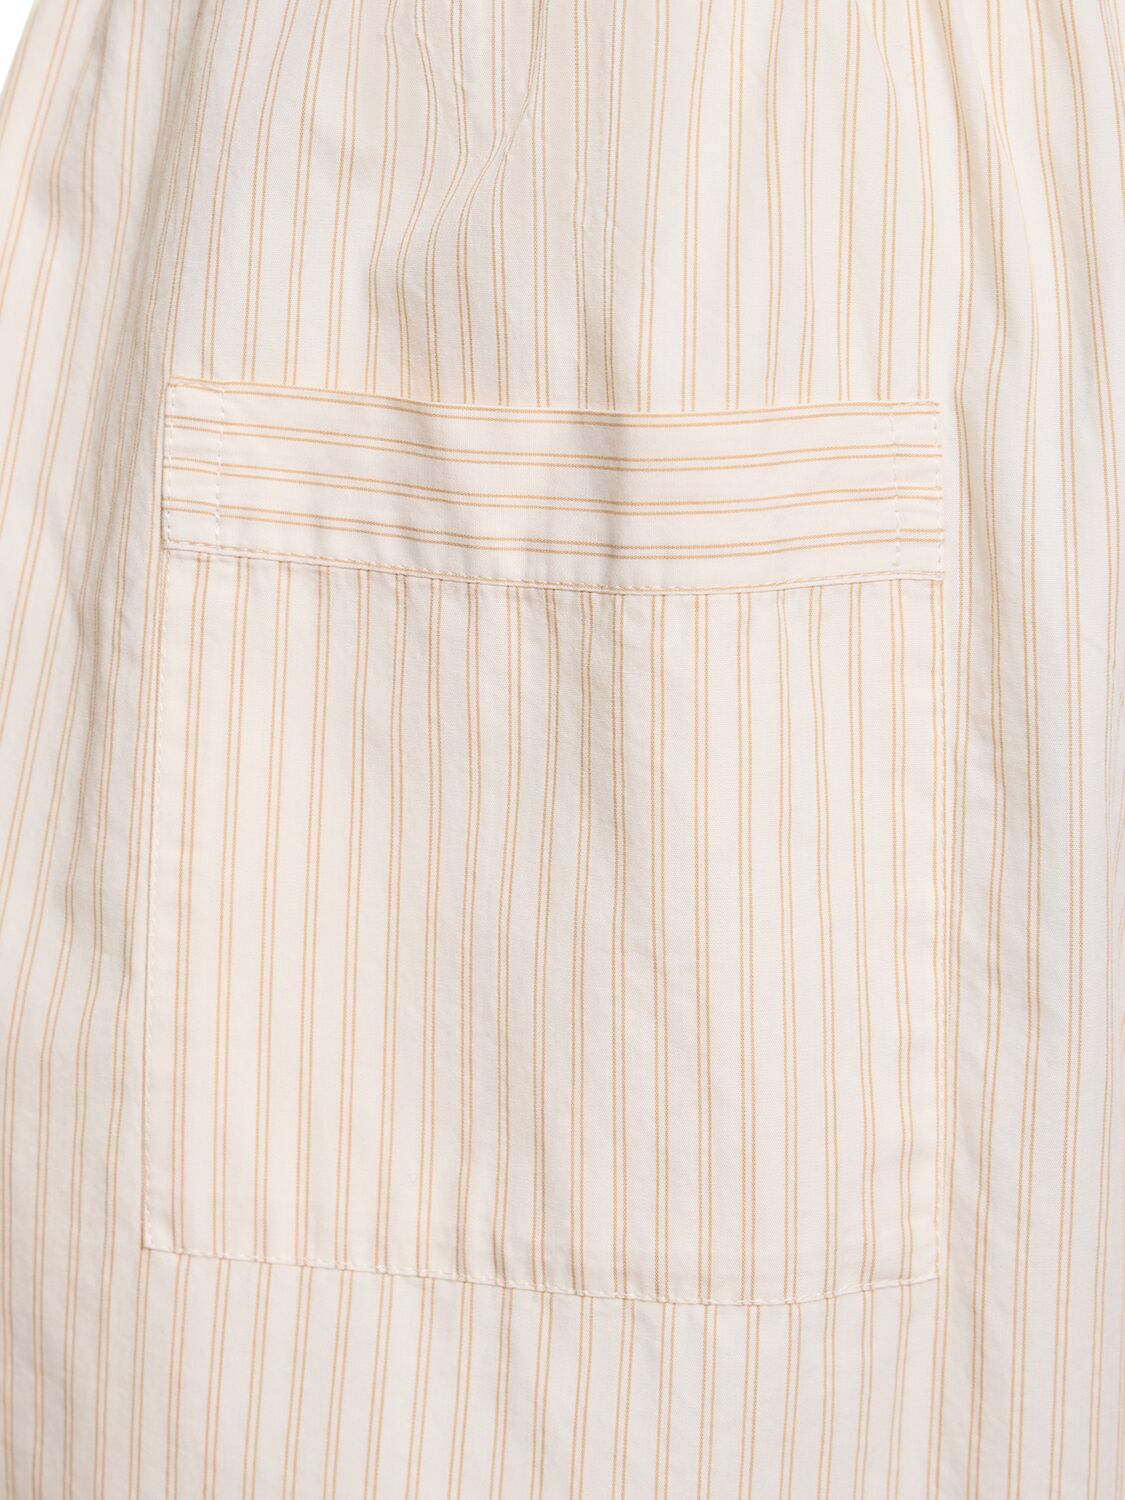 Shop Birkenstock Tekla Side Pleat Shorts In White